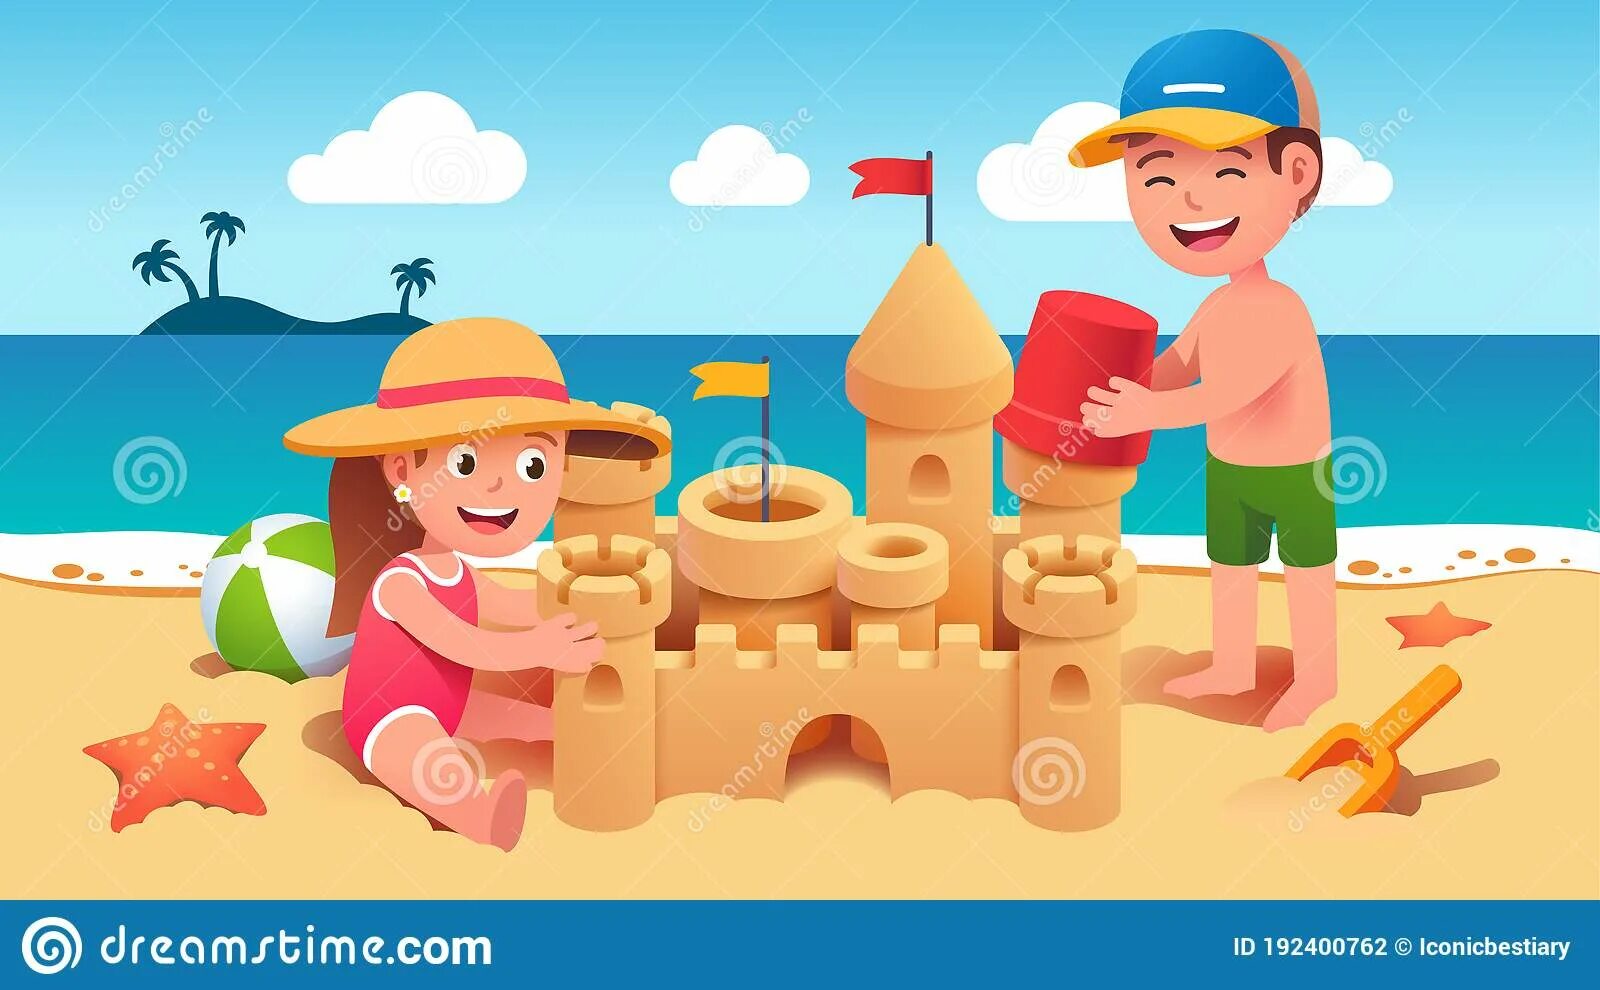 Make a sand castle. Дети строят песчаный замок. Замок из песка. Sandcastle для детей. Дети строят песочный замок.